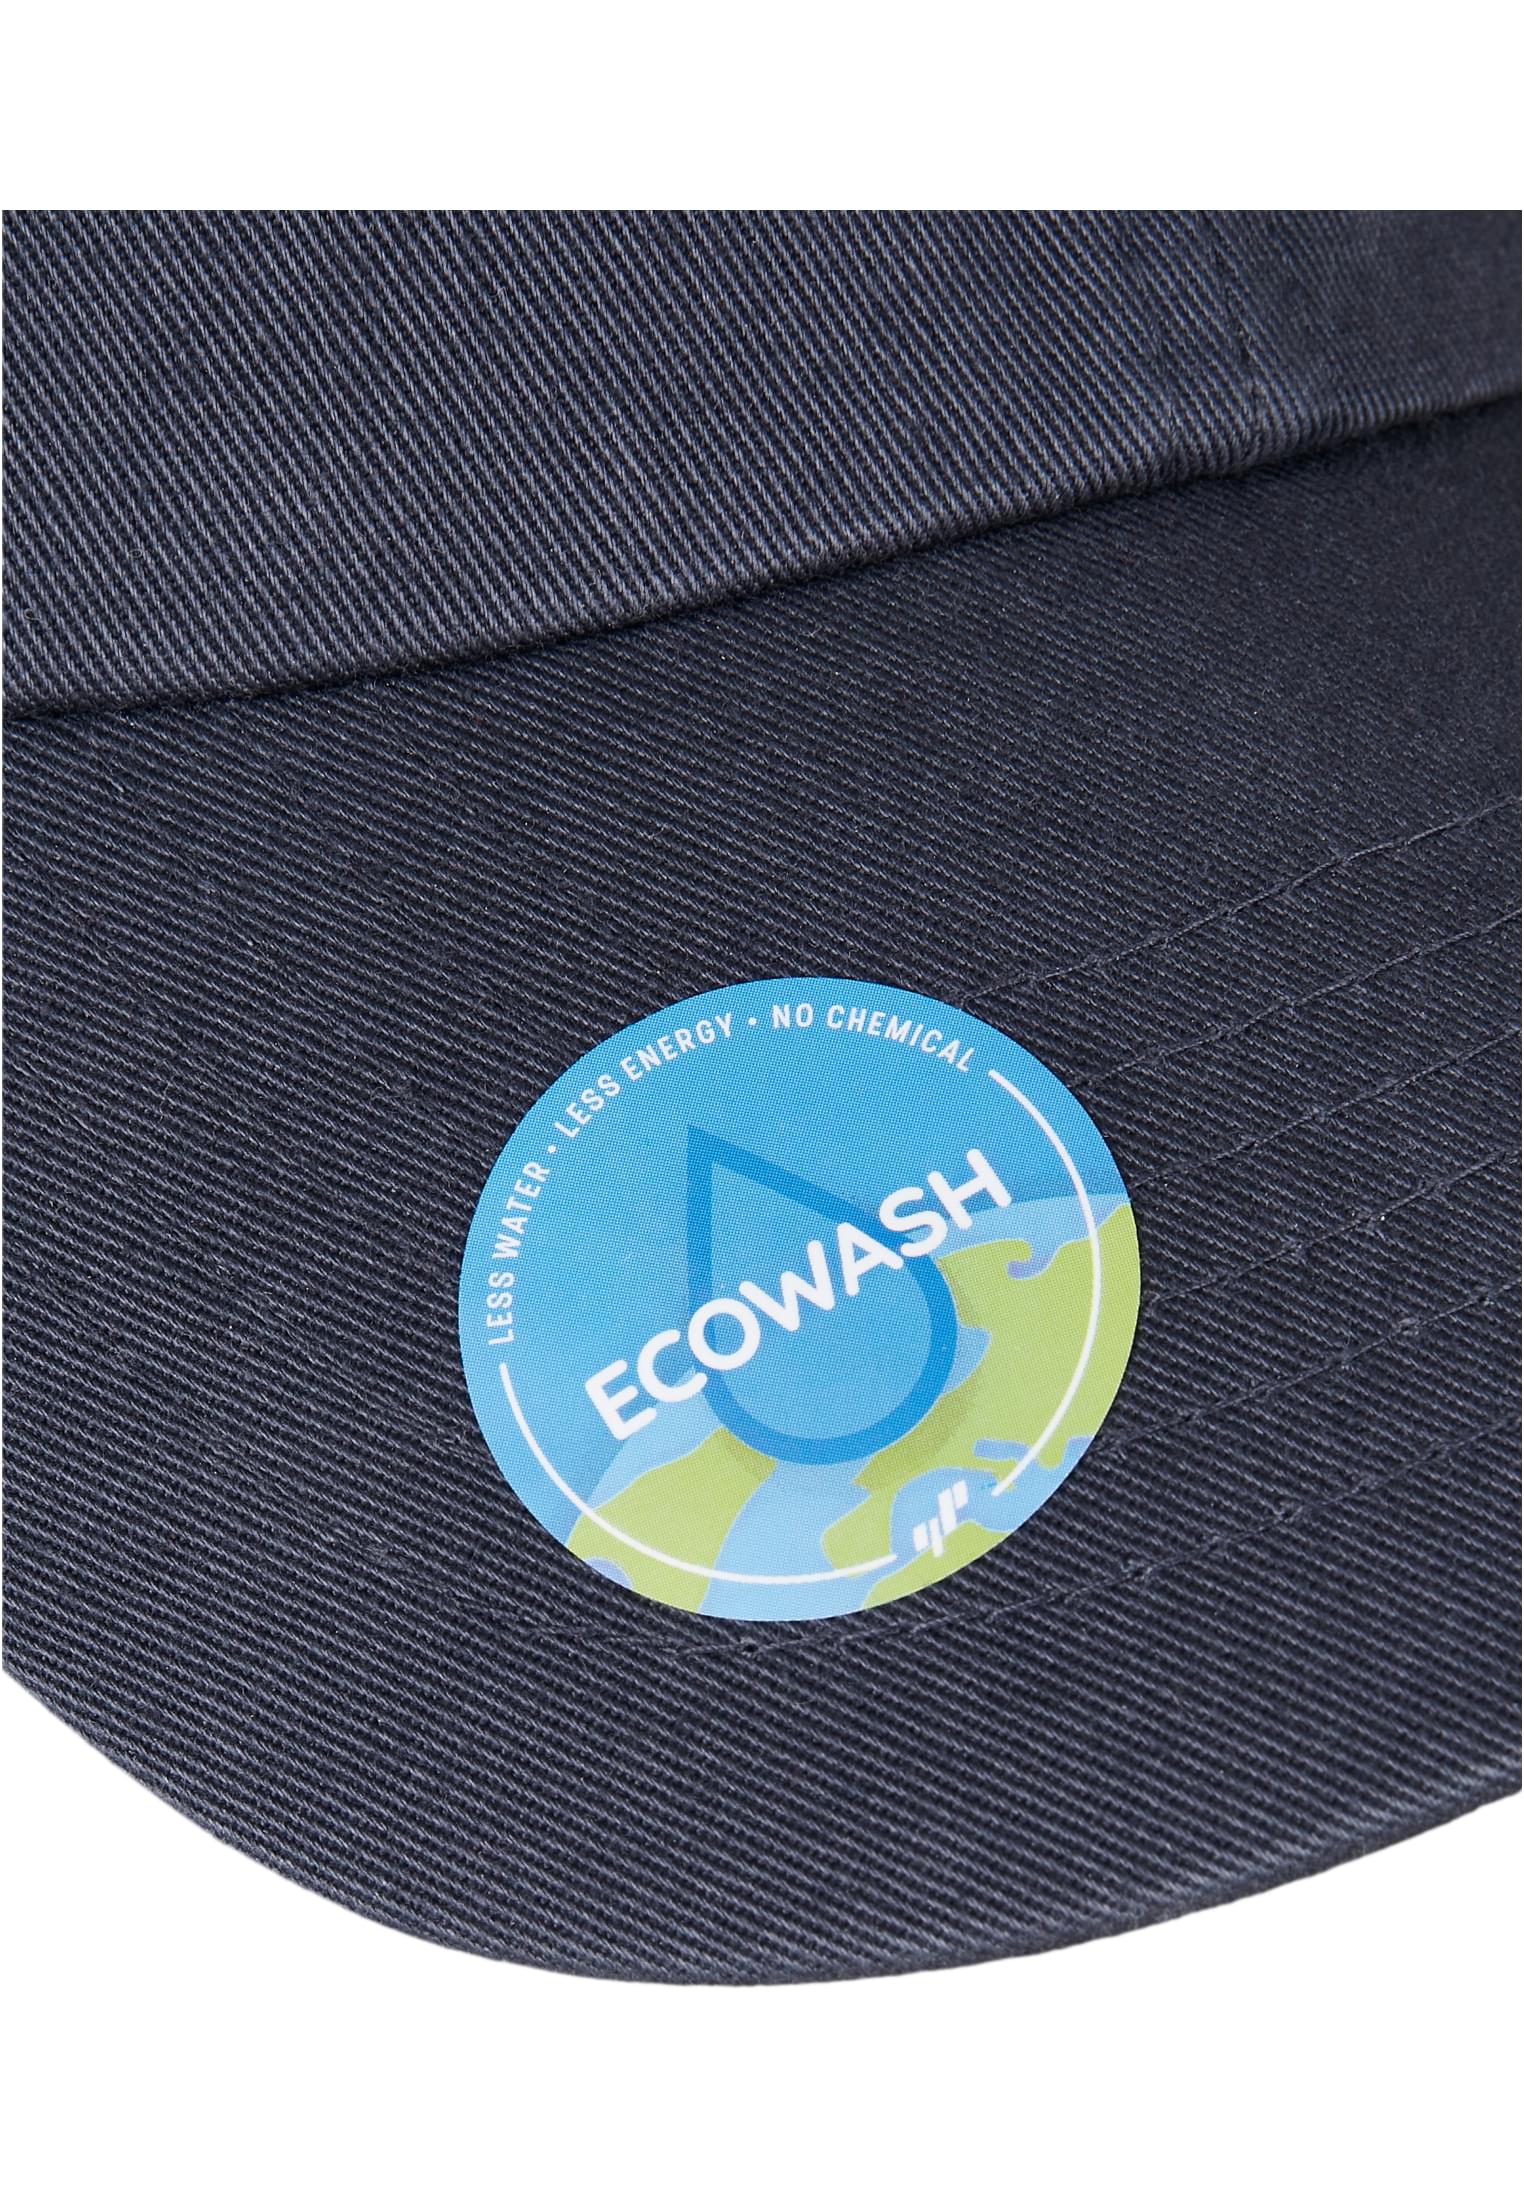 Ecowash Dad Cap-6245EC | Flex Caps